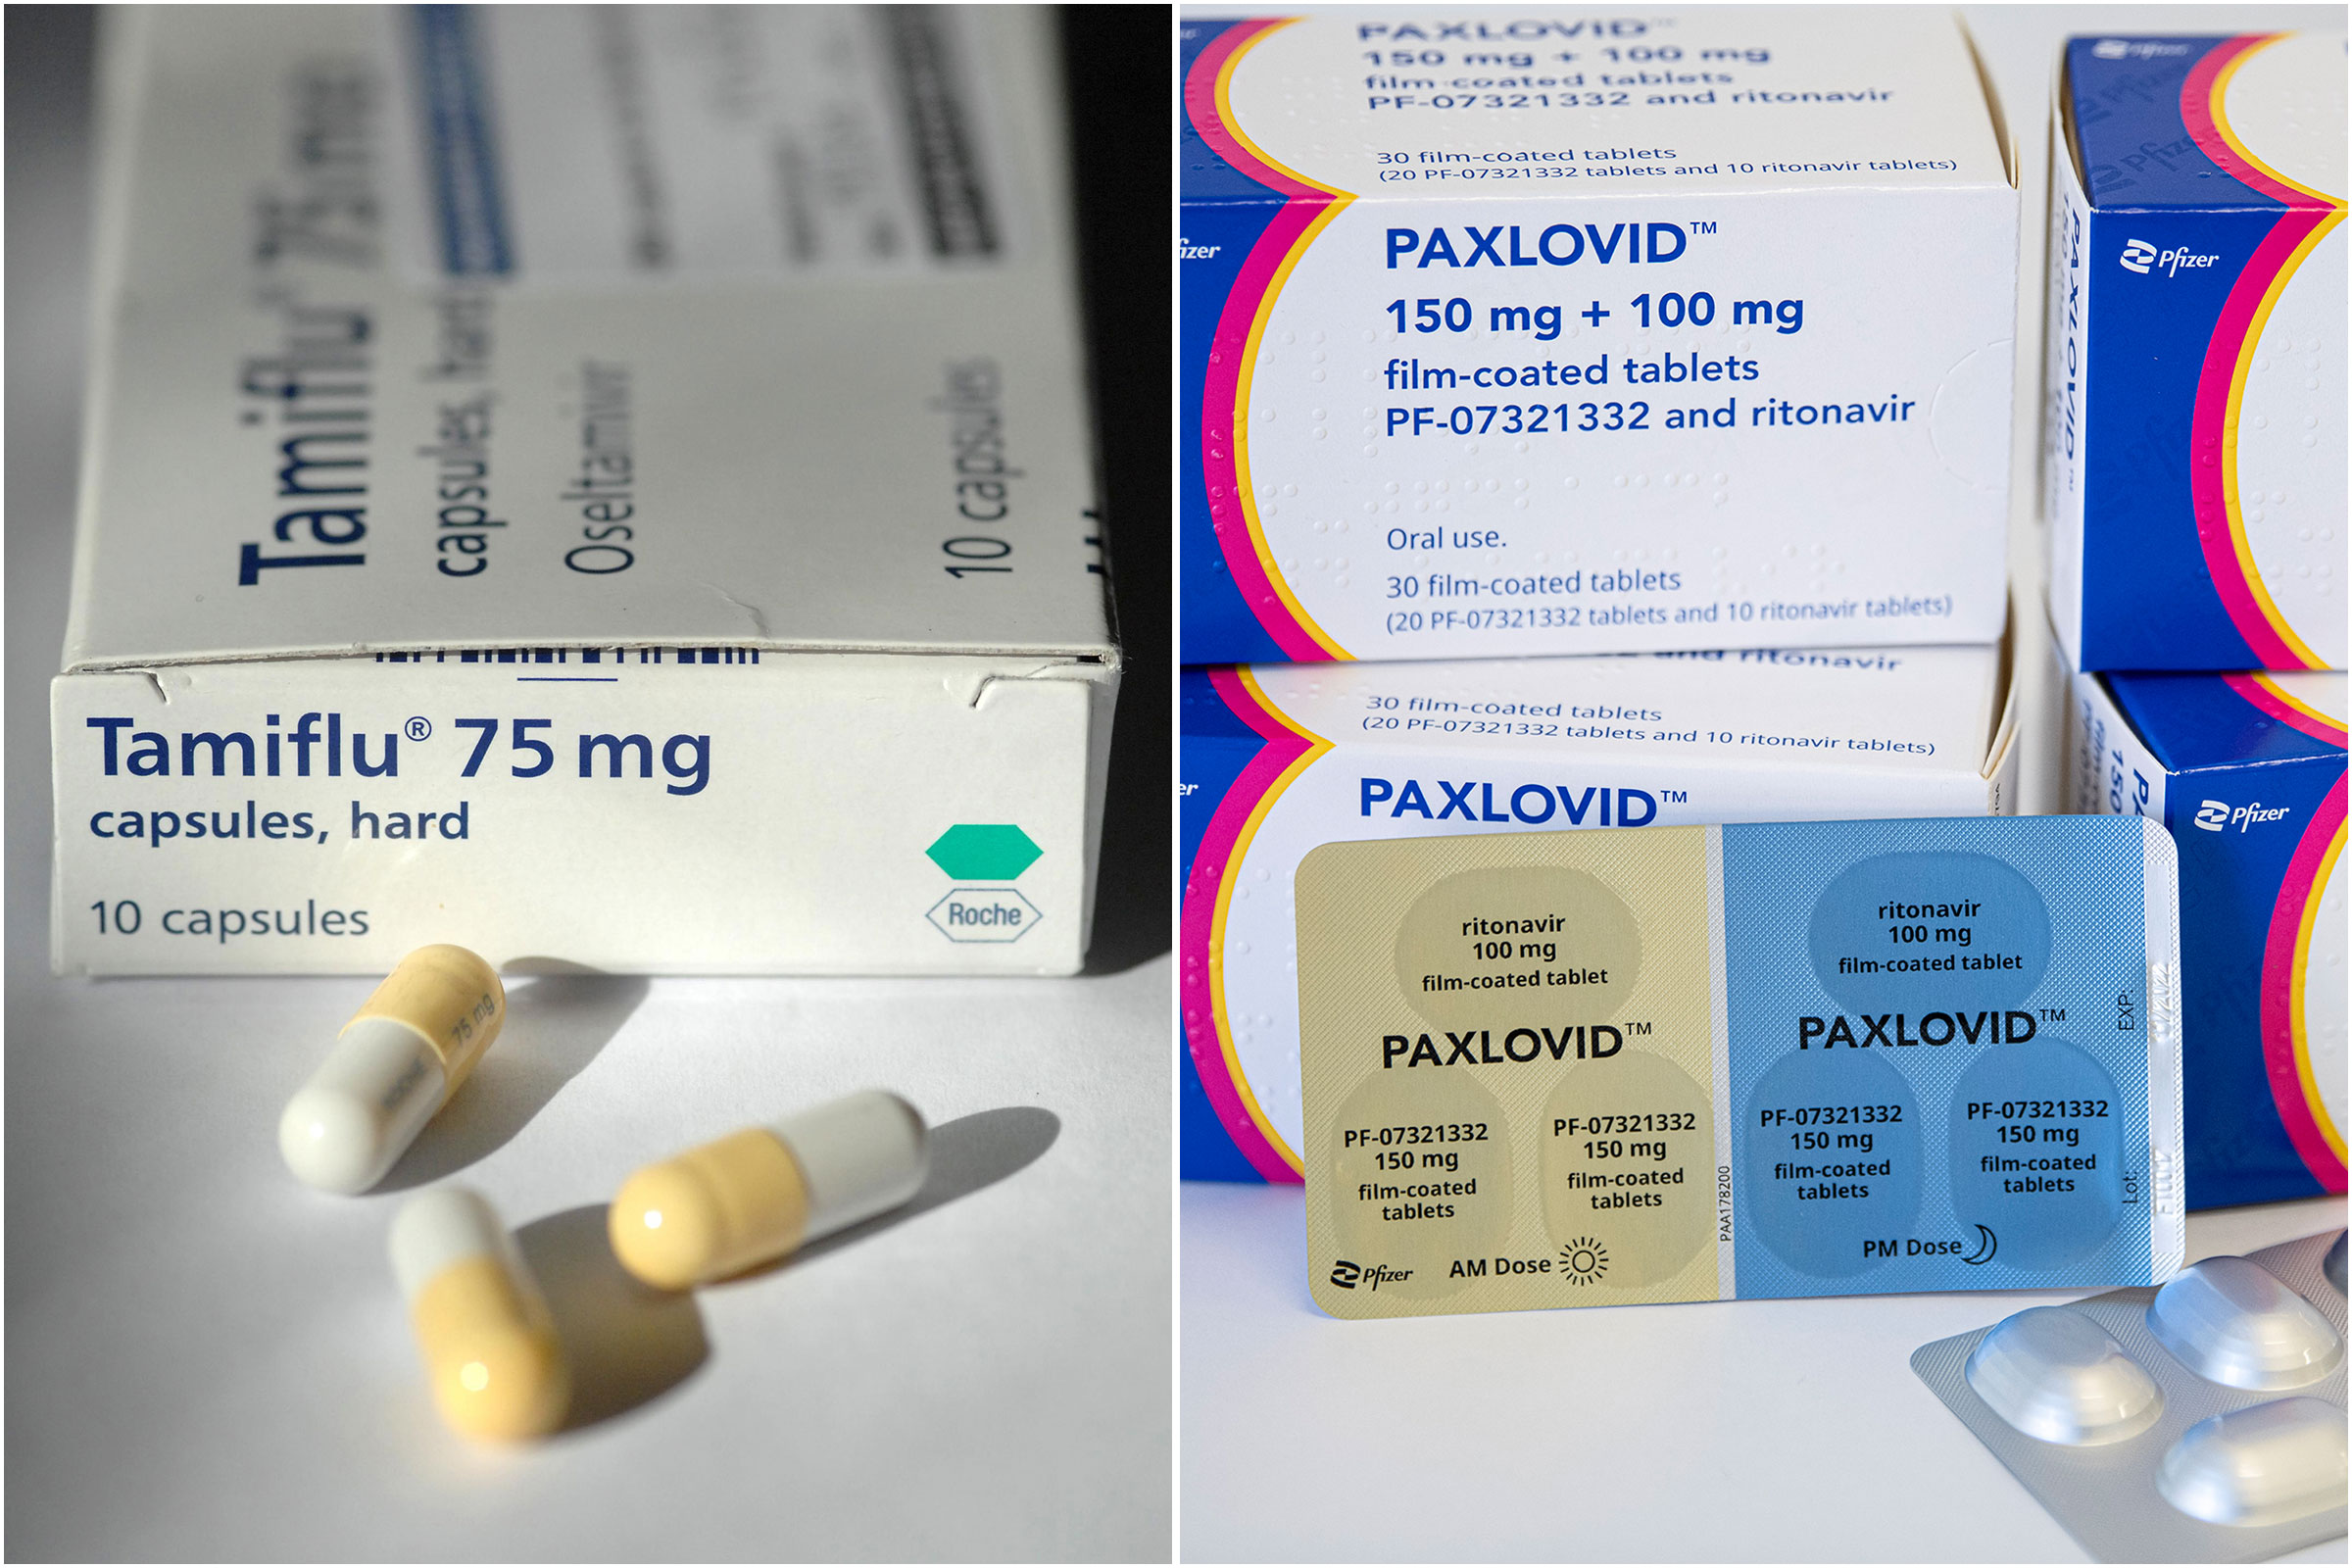 Tamiflu and Paxlovid flu treatments